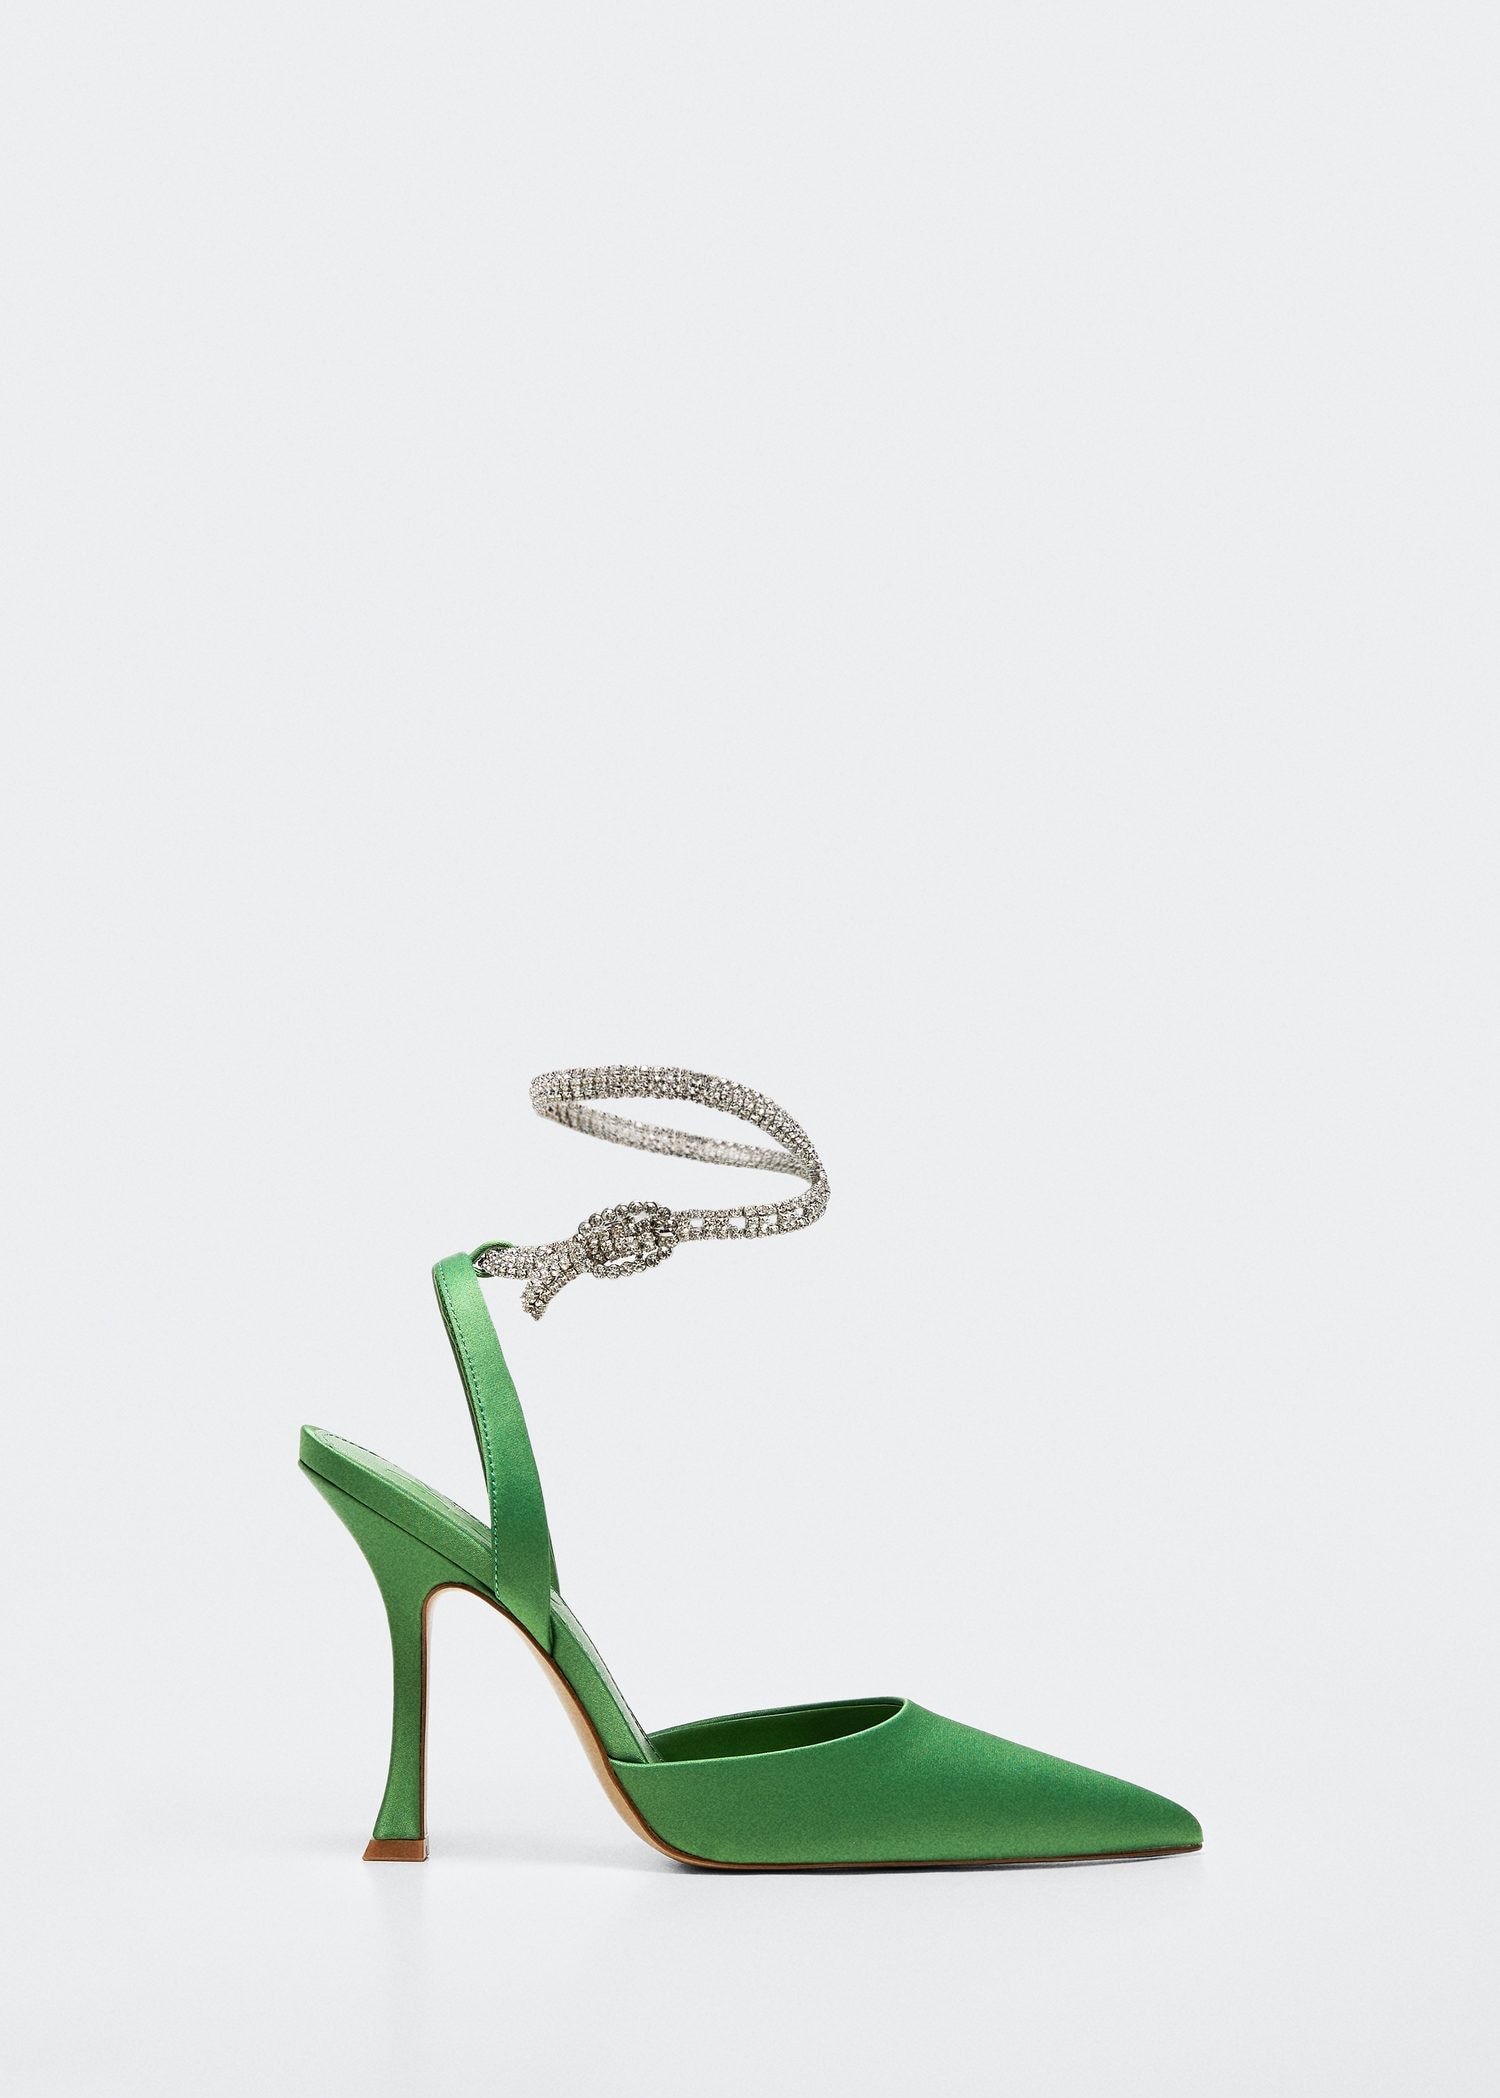 Zapato de satén verde y pulsera joya, de Mango.